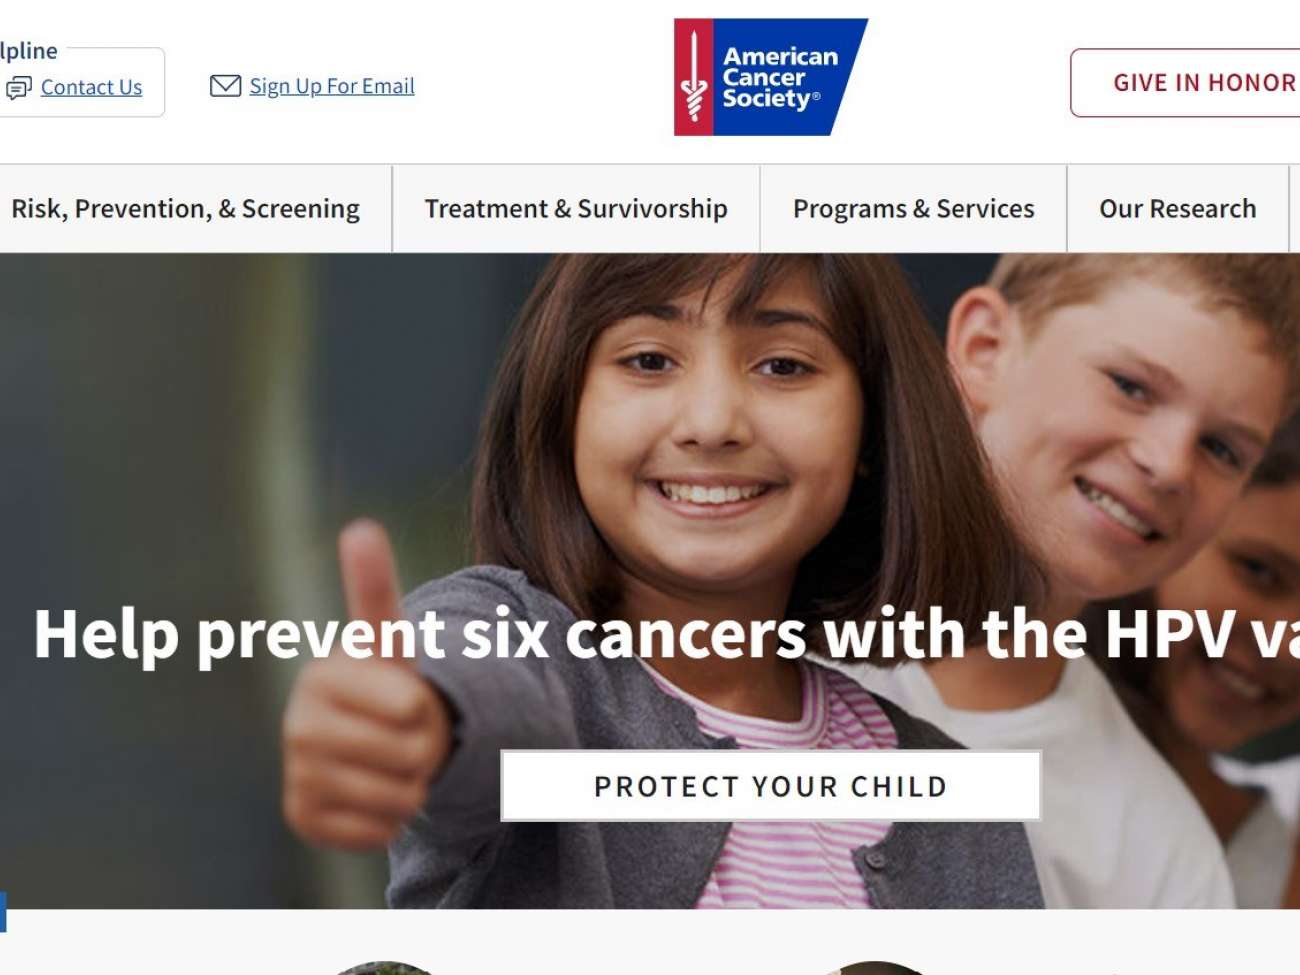 American Cancer Society  -  www.cancer.org